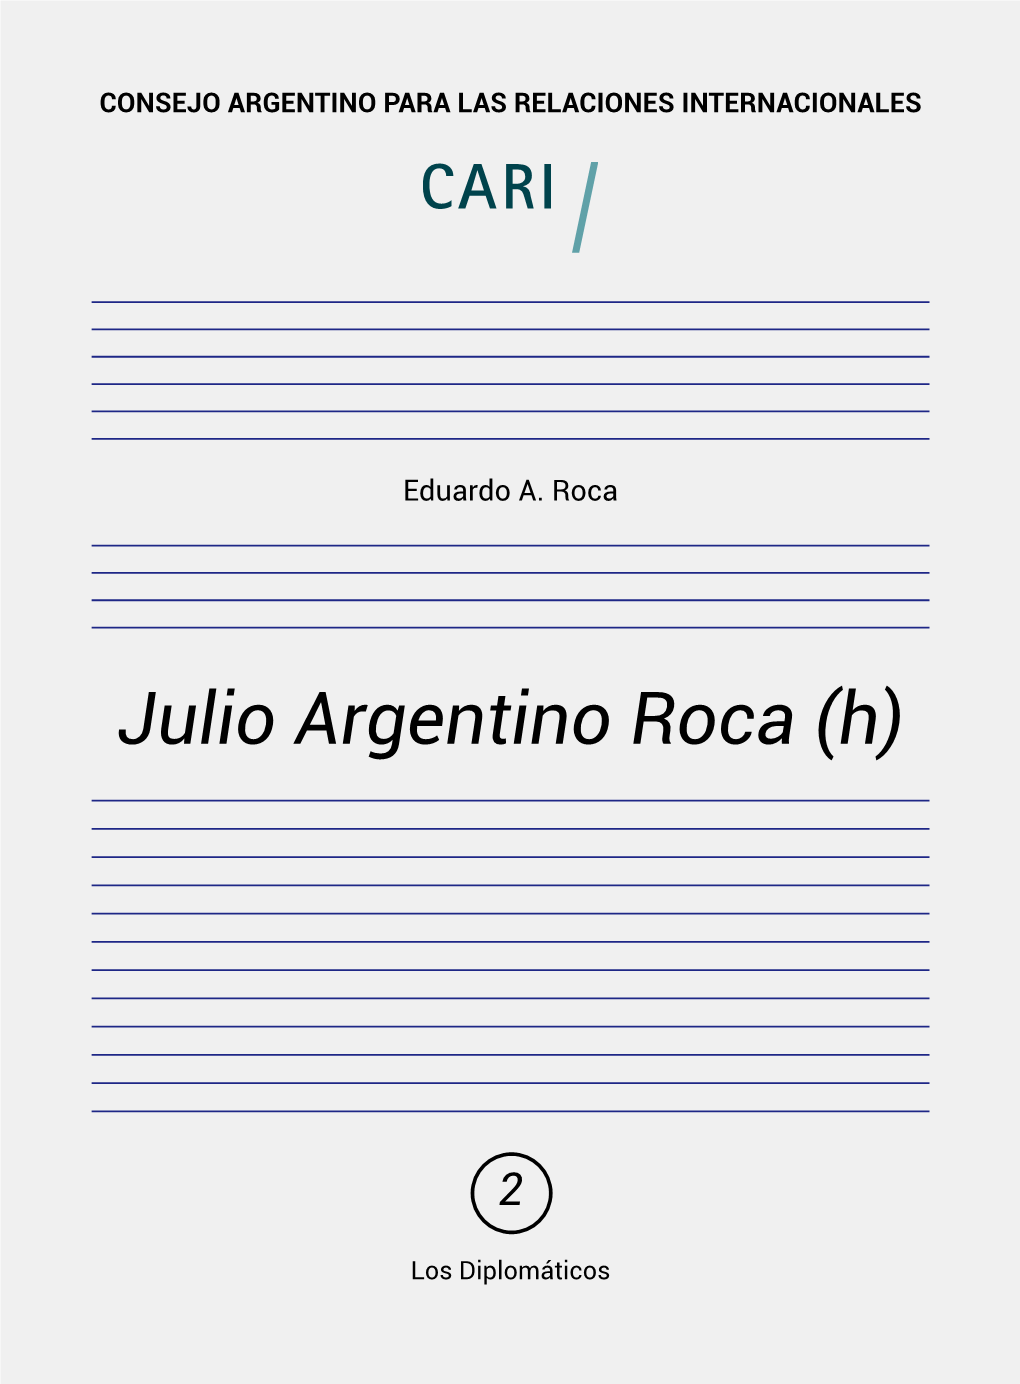 Julio Argentino Roca (H)